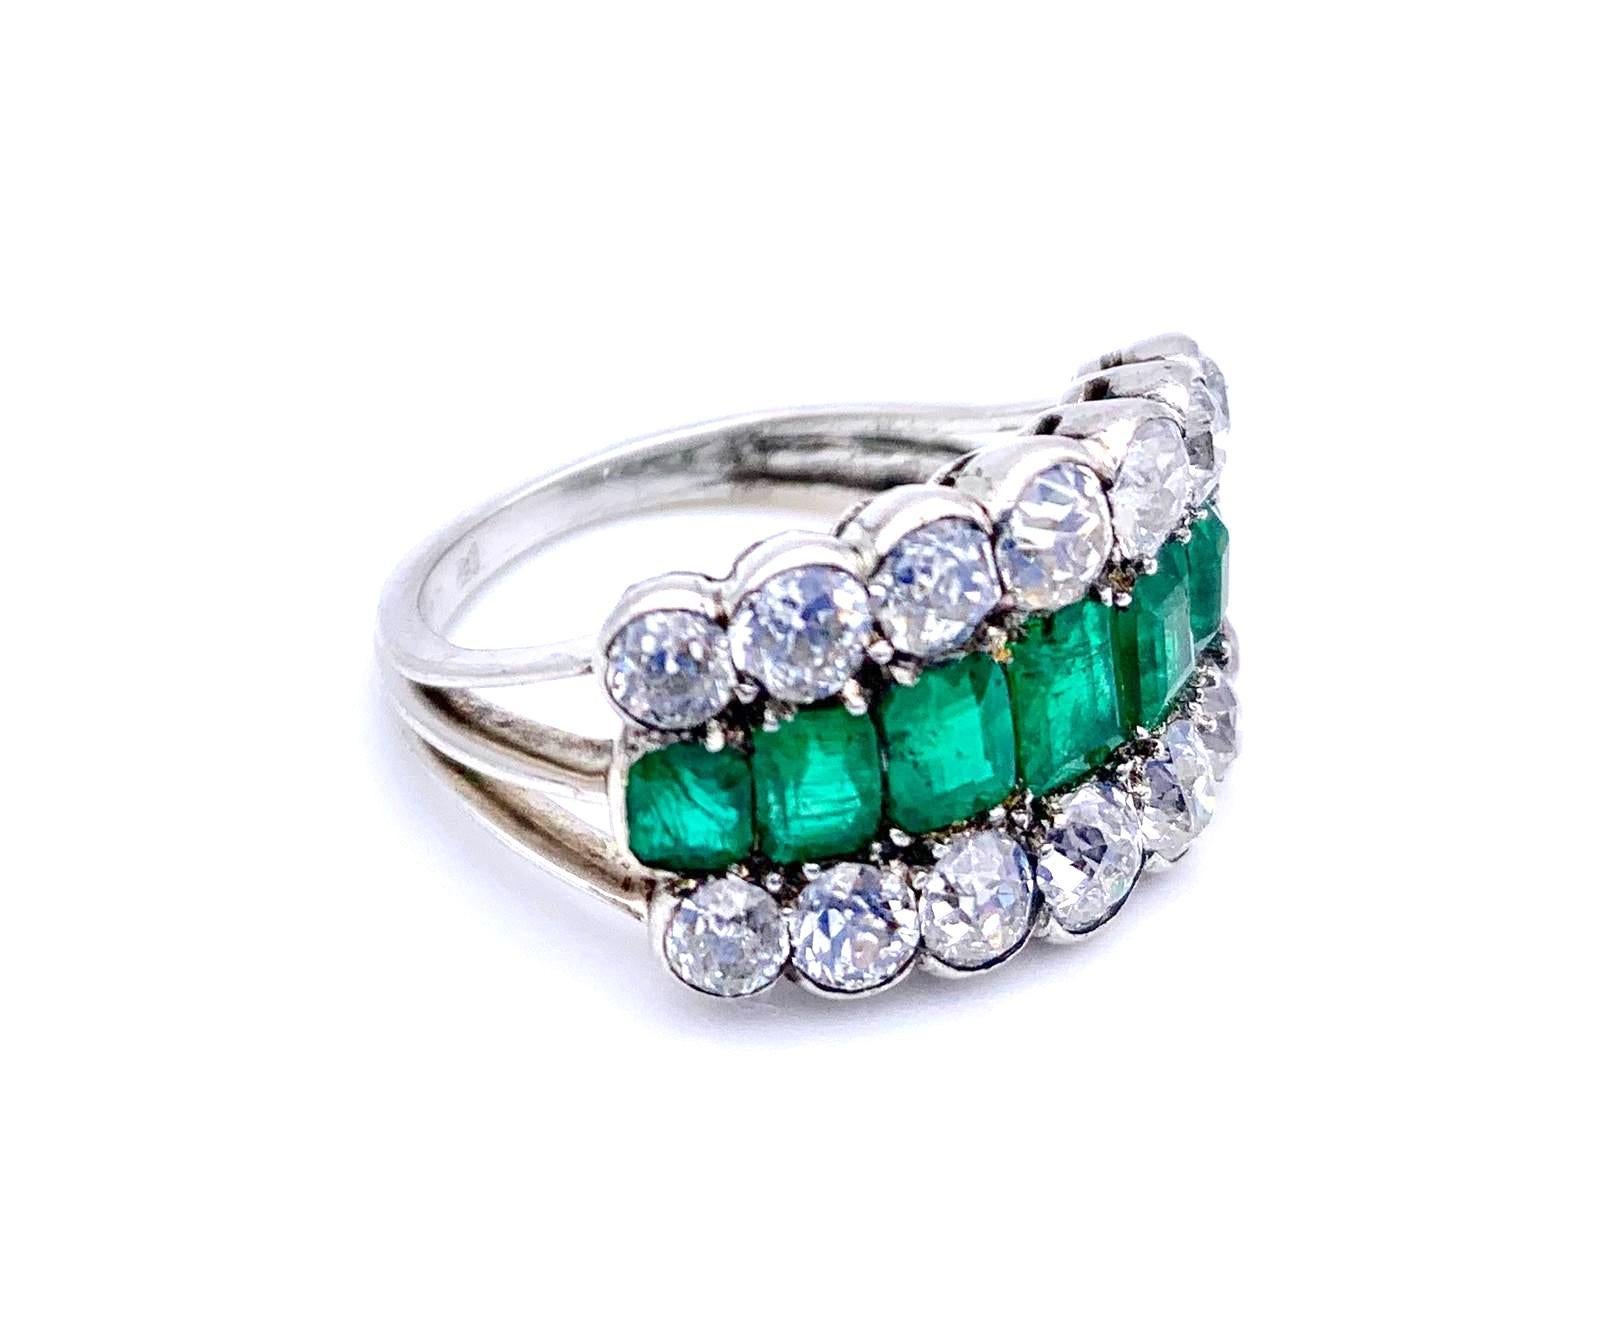 Dieser elegante Art-Déco-Ring aus Platin ist mit 14 Diamanten von 1,25 Karat und 7 Smaragden von insgesamt 0,9 Karat besetzt.
Größe US 6